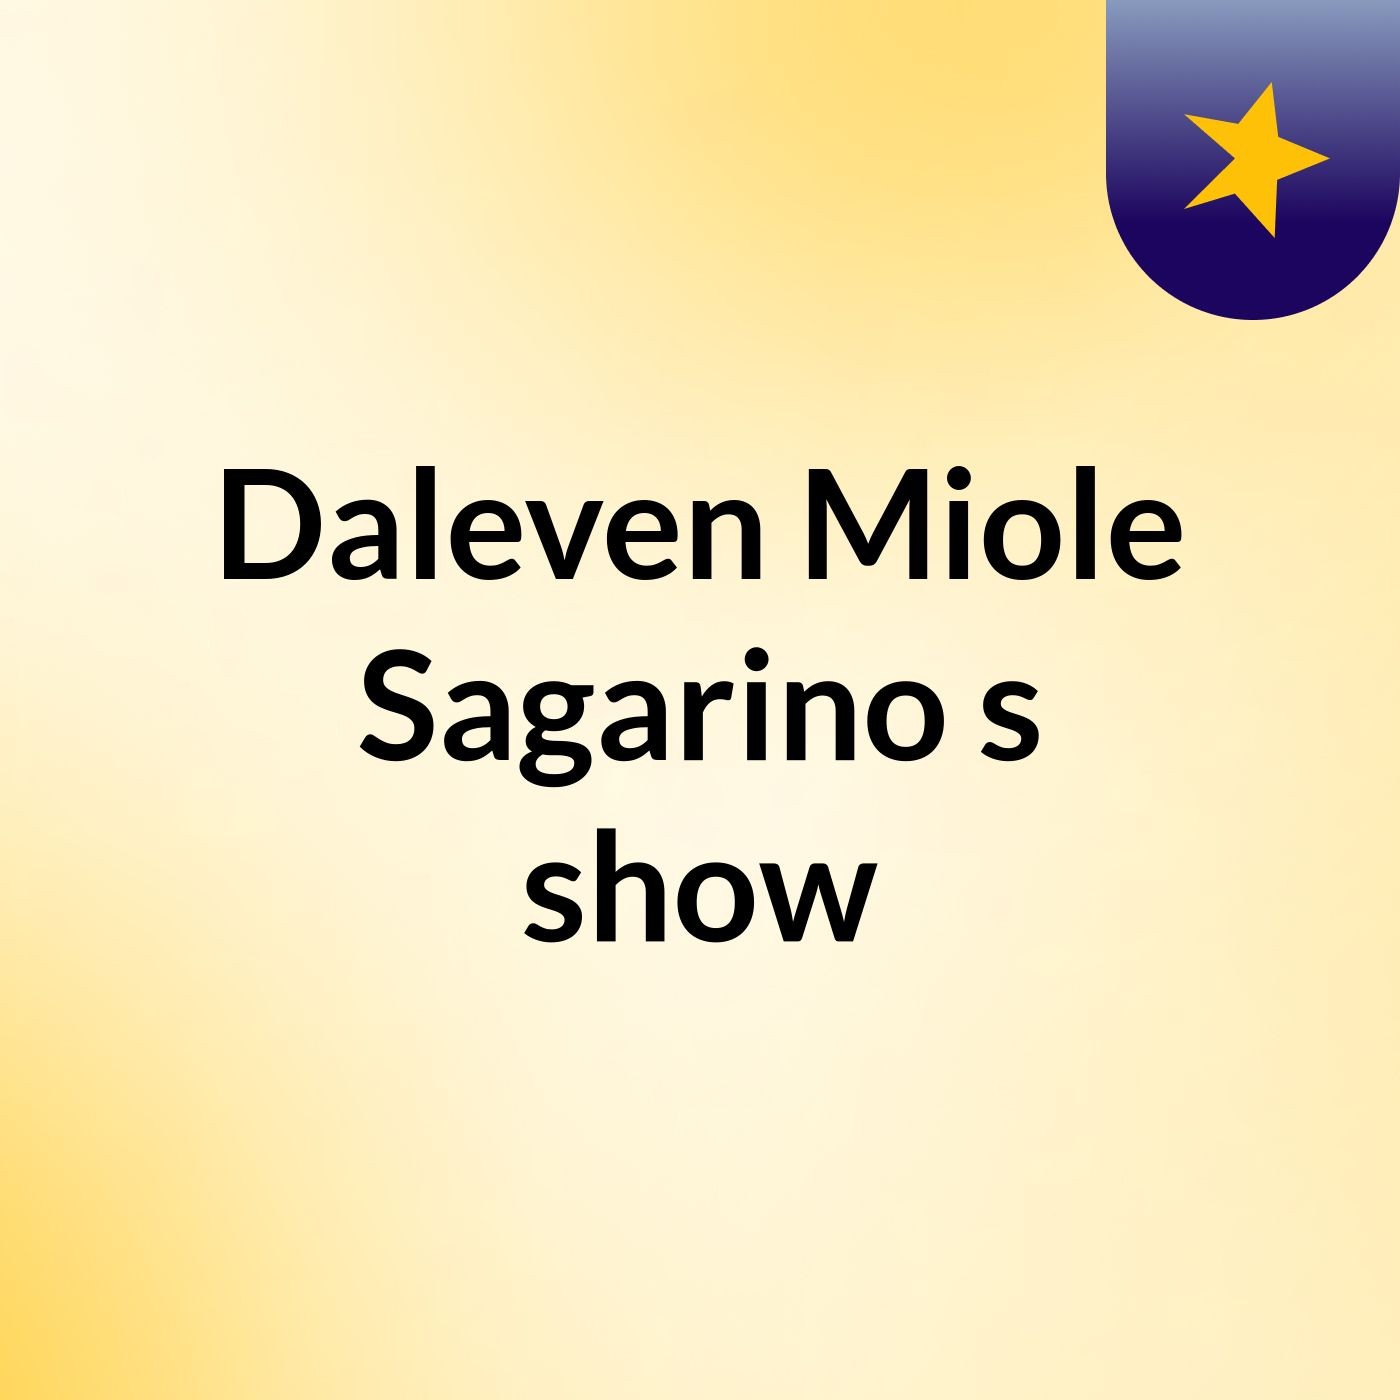 Episode 3 - Daleven Miole Sagarino's show